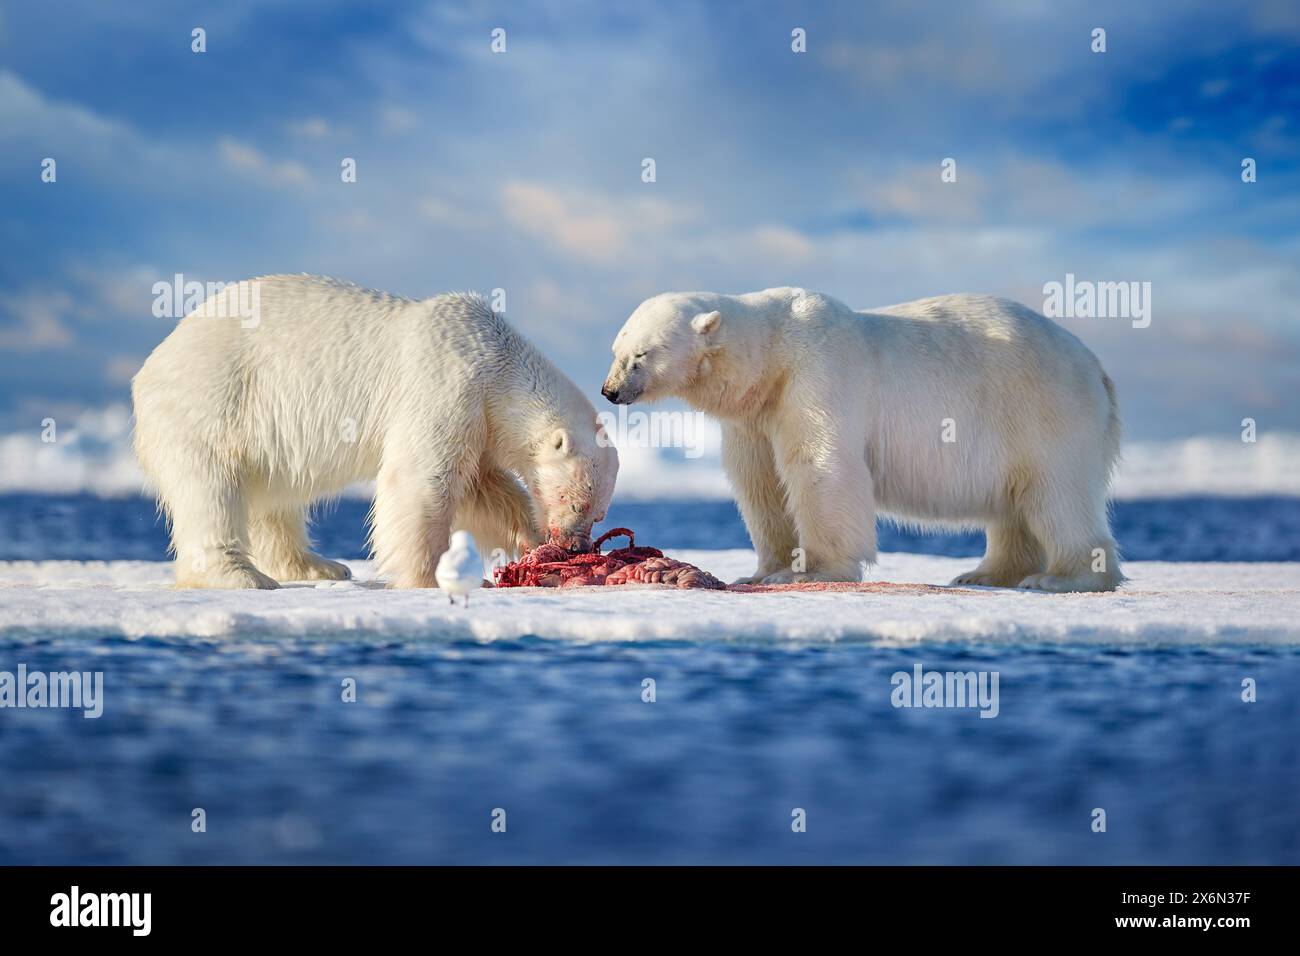 Fauna selvatica artica - due orsi polari con foche uccise. Orso bianco che si nutre di ghiaccio deriva con neve, Svalbard, Norvegia. Natura sanguinosa con grandi animali. Dange Foto Stock